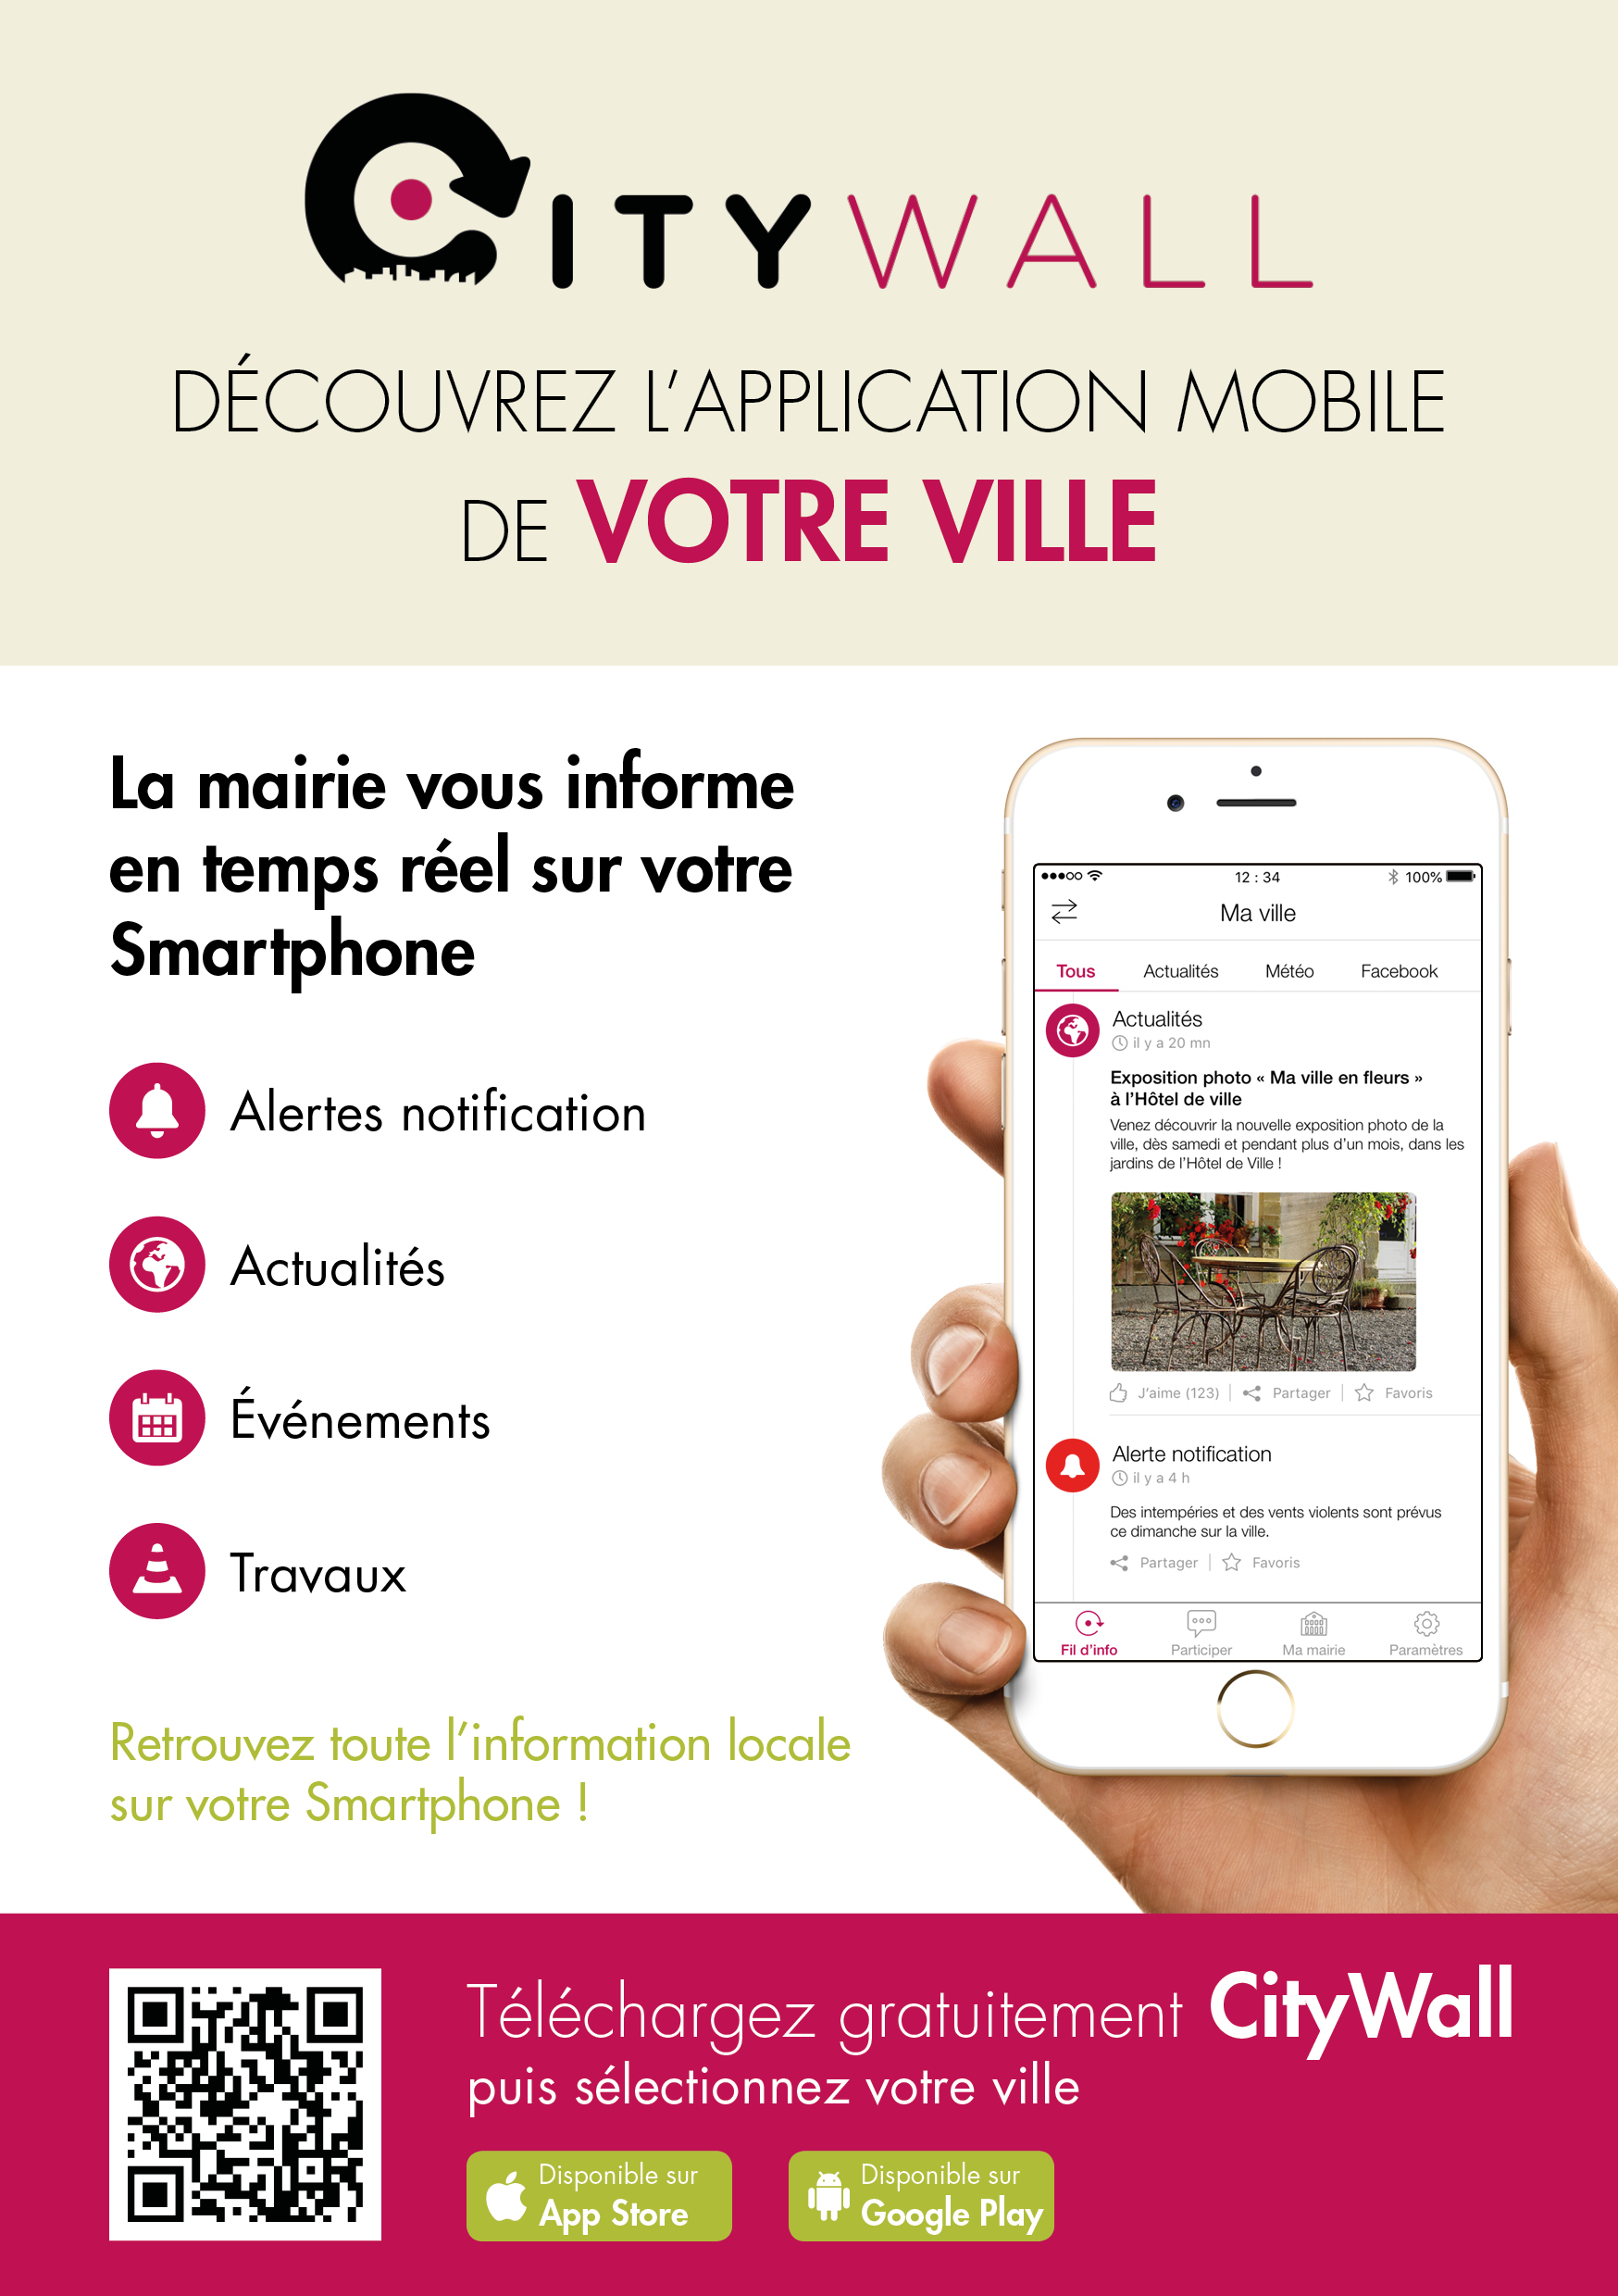 La mairie vous informe en temps réel sur votre Smartphone avec CITYWALL